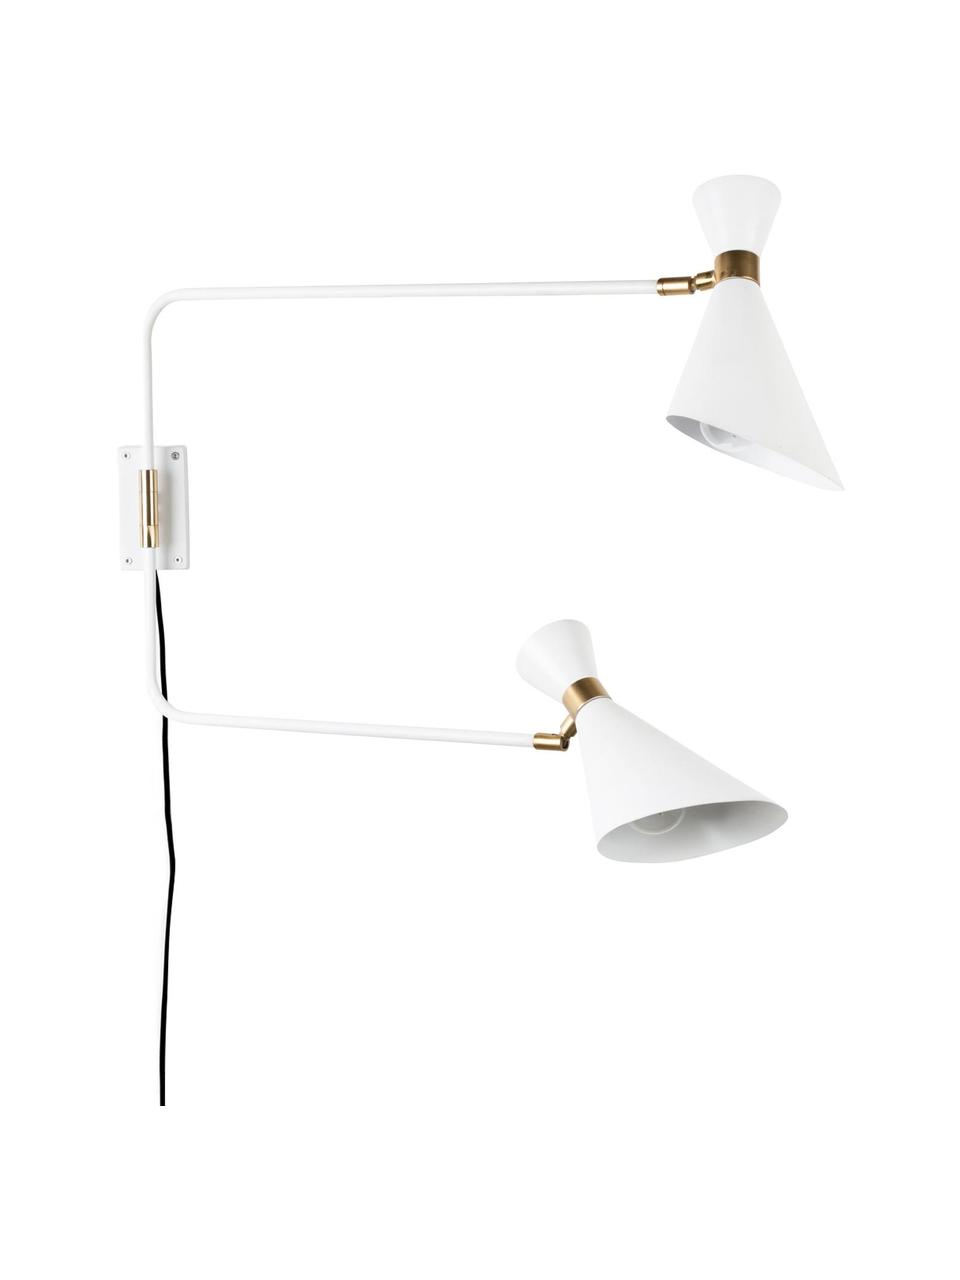 Grote verstelbare wandlamp Double Shady met stekker, Decoratie: vermessingd metaal, Wit, messingkleurig, B 87 x H 60 cm